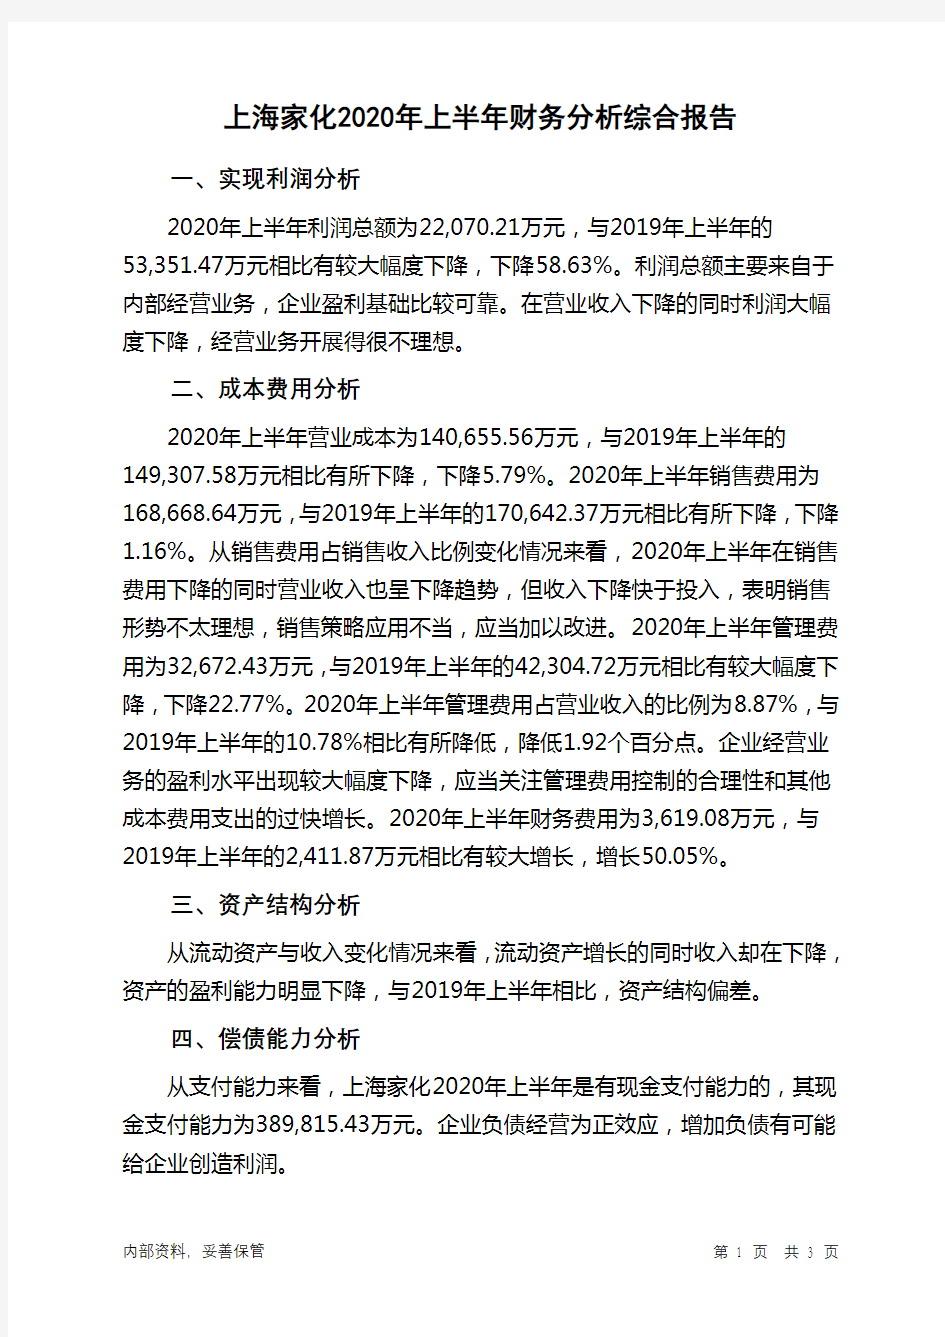 上海家化2020年上半年财务分析结论报告